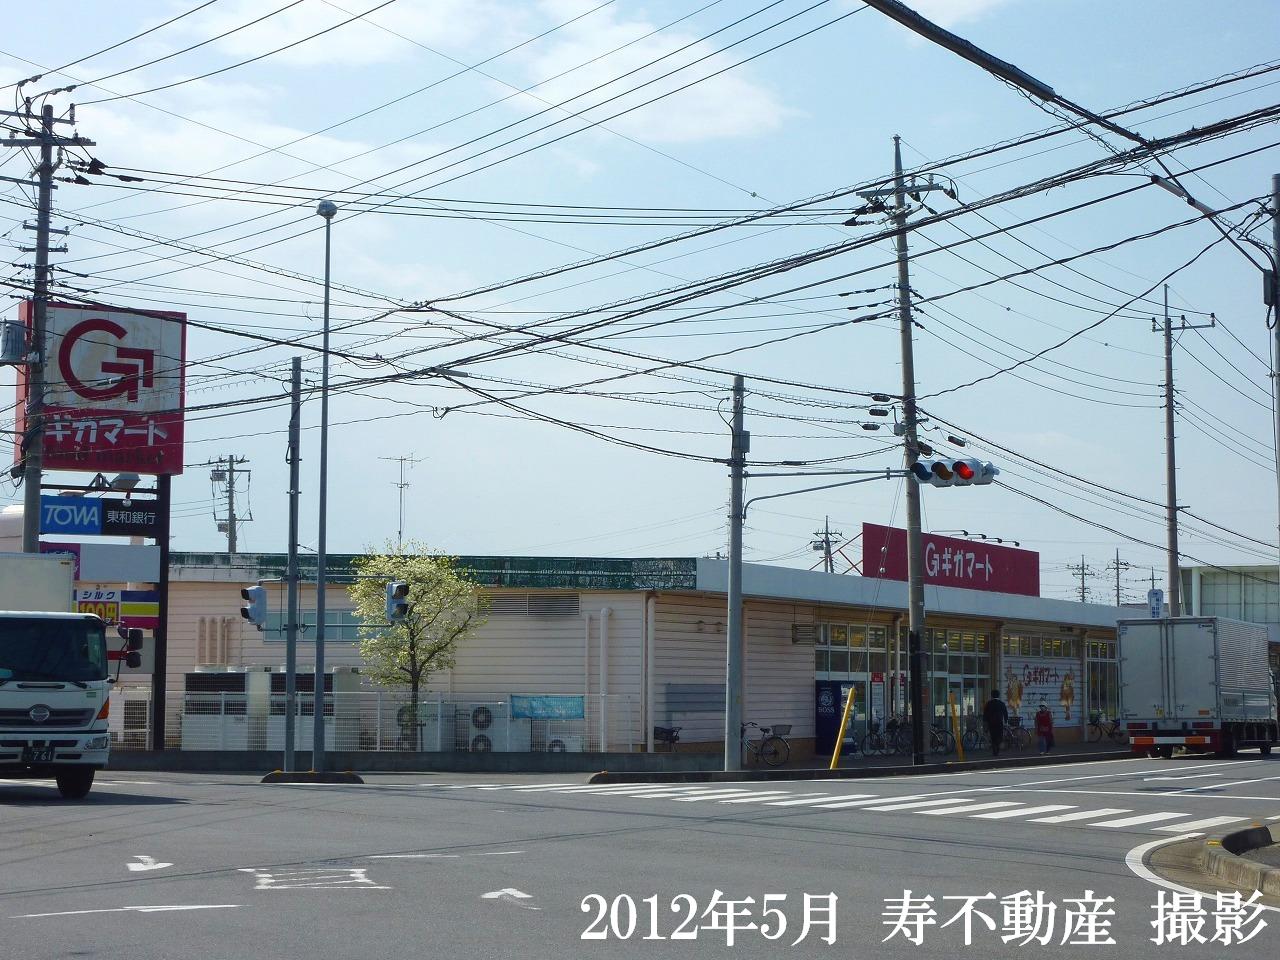 Supermarket. Gigamato Kamihideya store up to (super) 600m